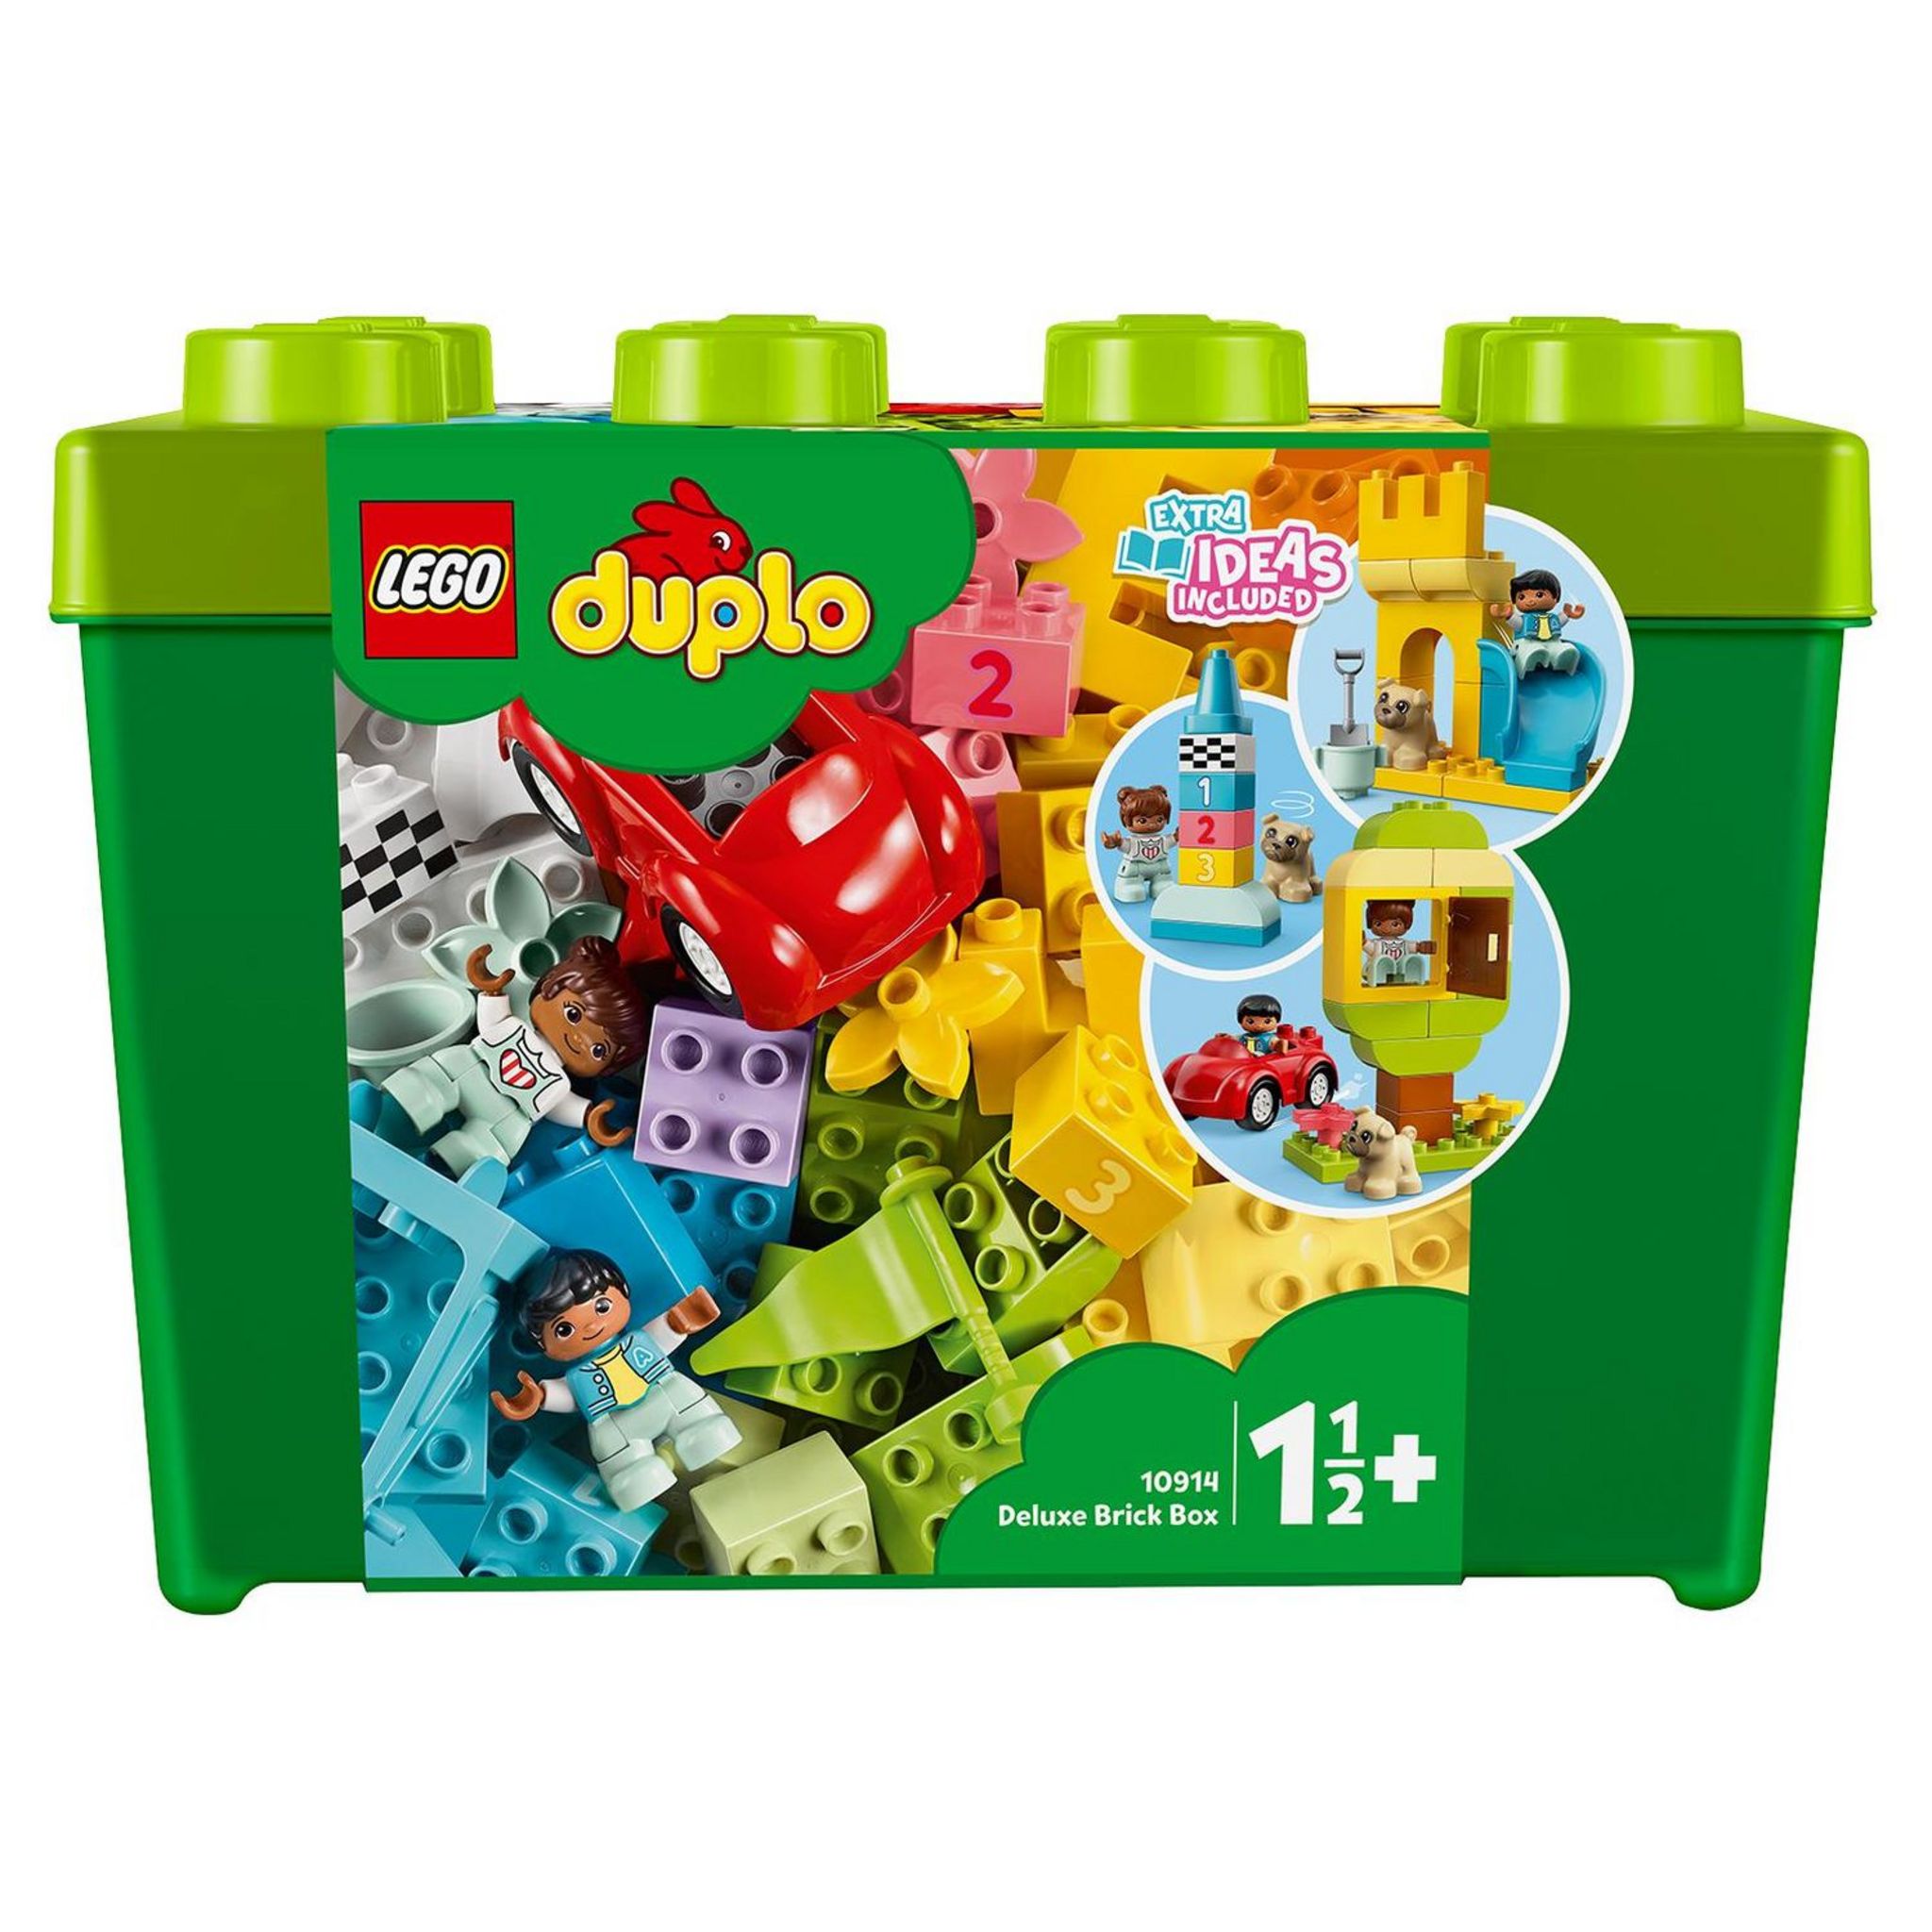 LEGO LEGO DUPLO 10991 L'Aire de Jeux des Enfants, Jouet pour Apprendre les  Lettres, Chiffres et Couleurs pas cher 